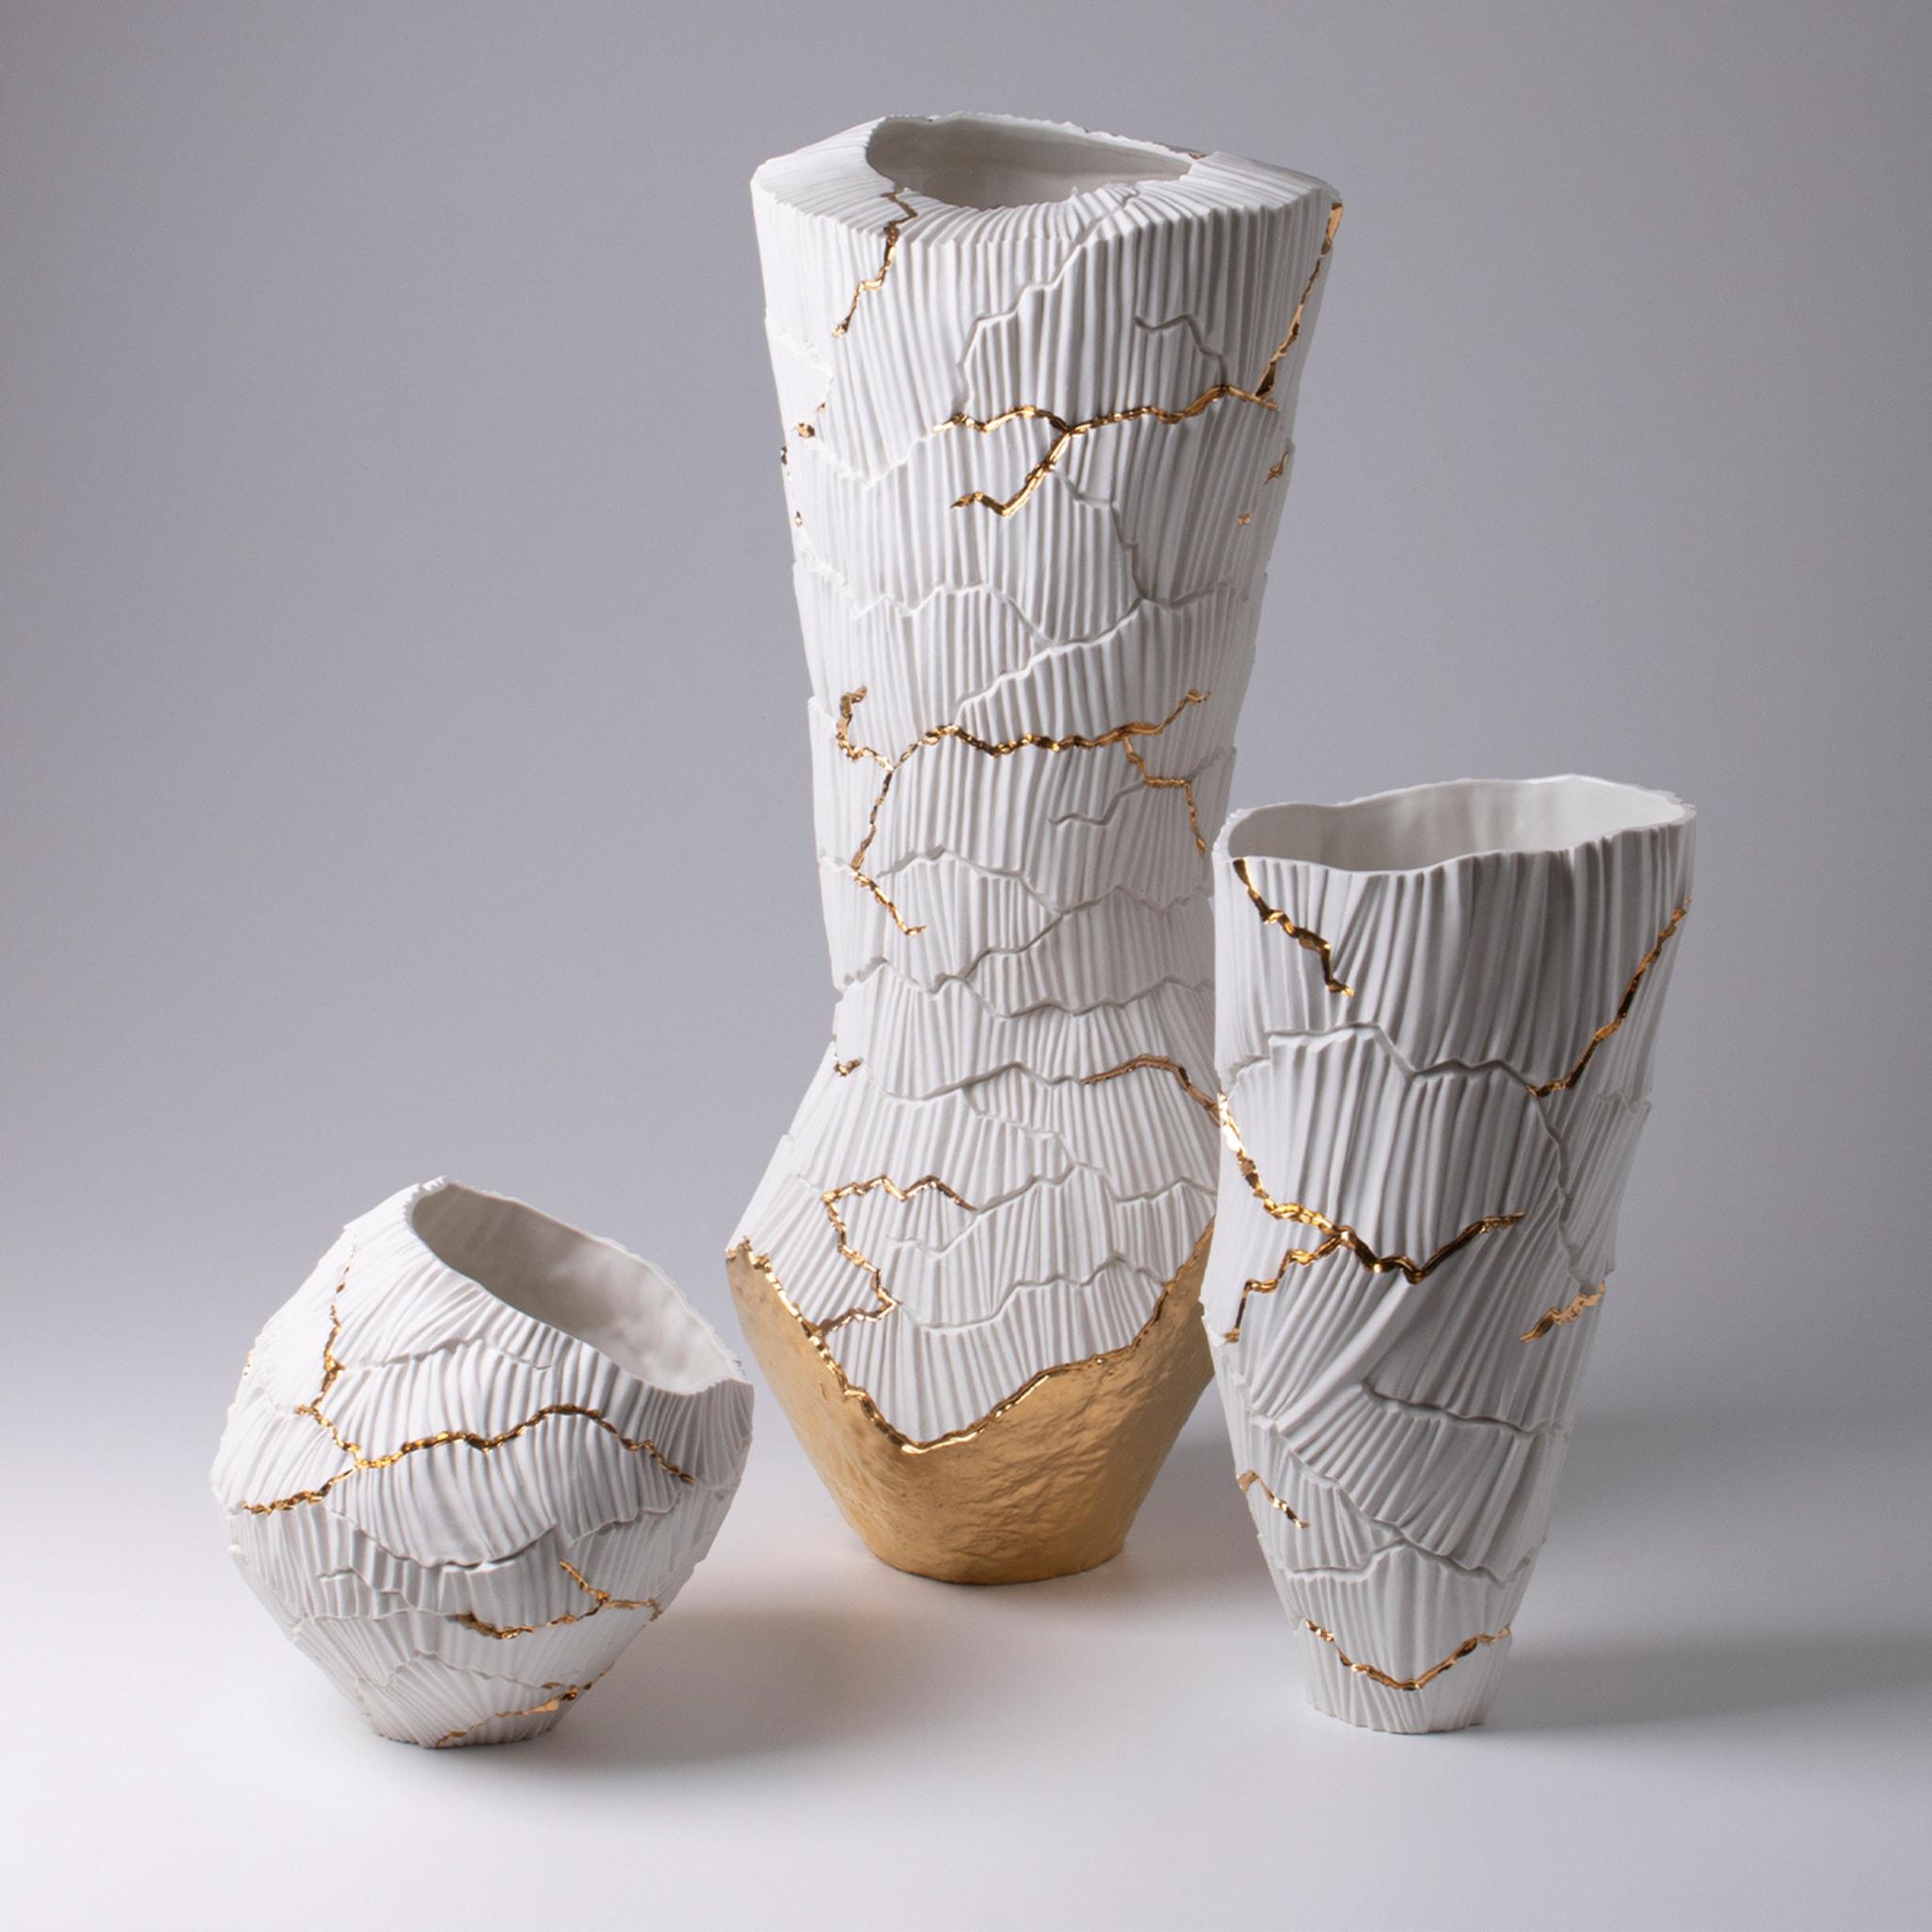 Meltemi ist eine elegante Porzellanvase, die zur Collection'S Anemos gehört. Die sanften Kurven der vom Wind geformten Kanäle schaffen einen einzigartigen Rhythmus auf der Oberfläche, unterbrochen von tiefen Rissen, wie ein trockenes Land, das ein